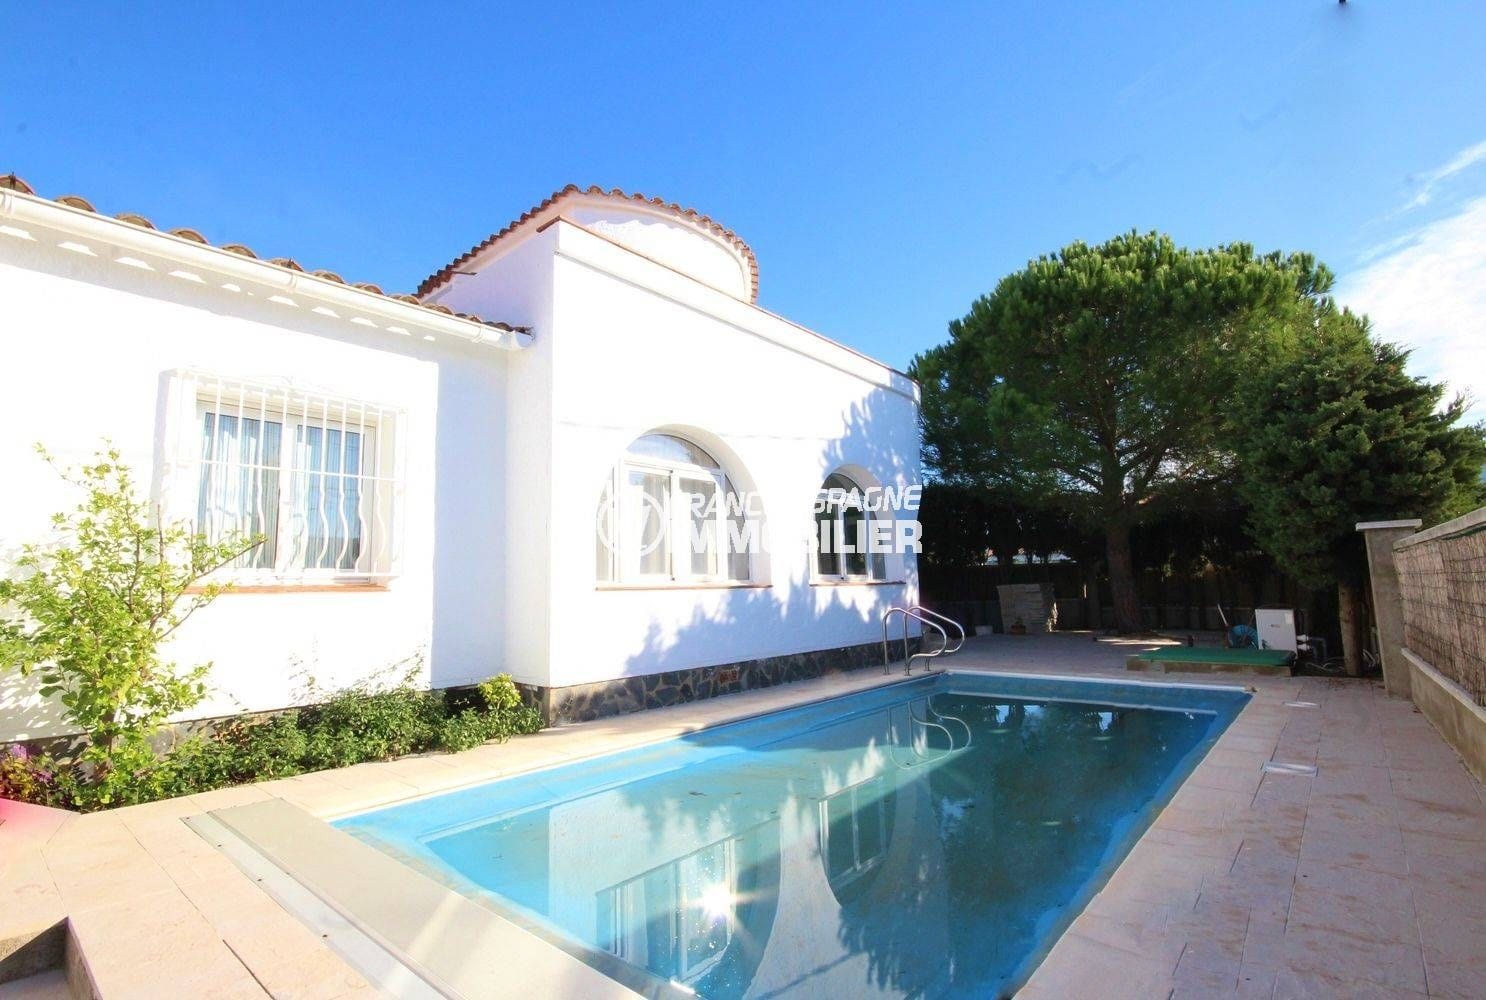 immobilier rosas : villa secteur résidentiel façade villa avec piscine exposition sud